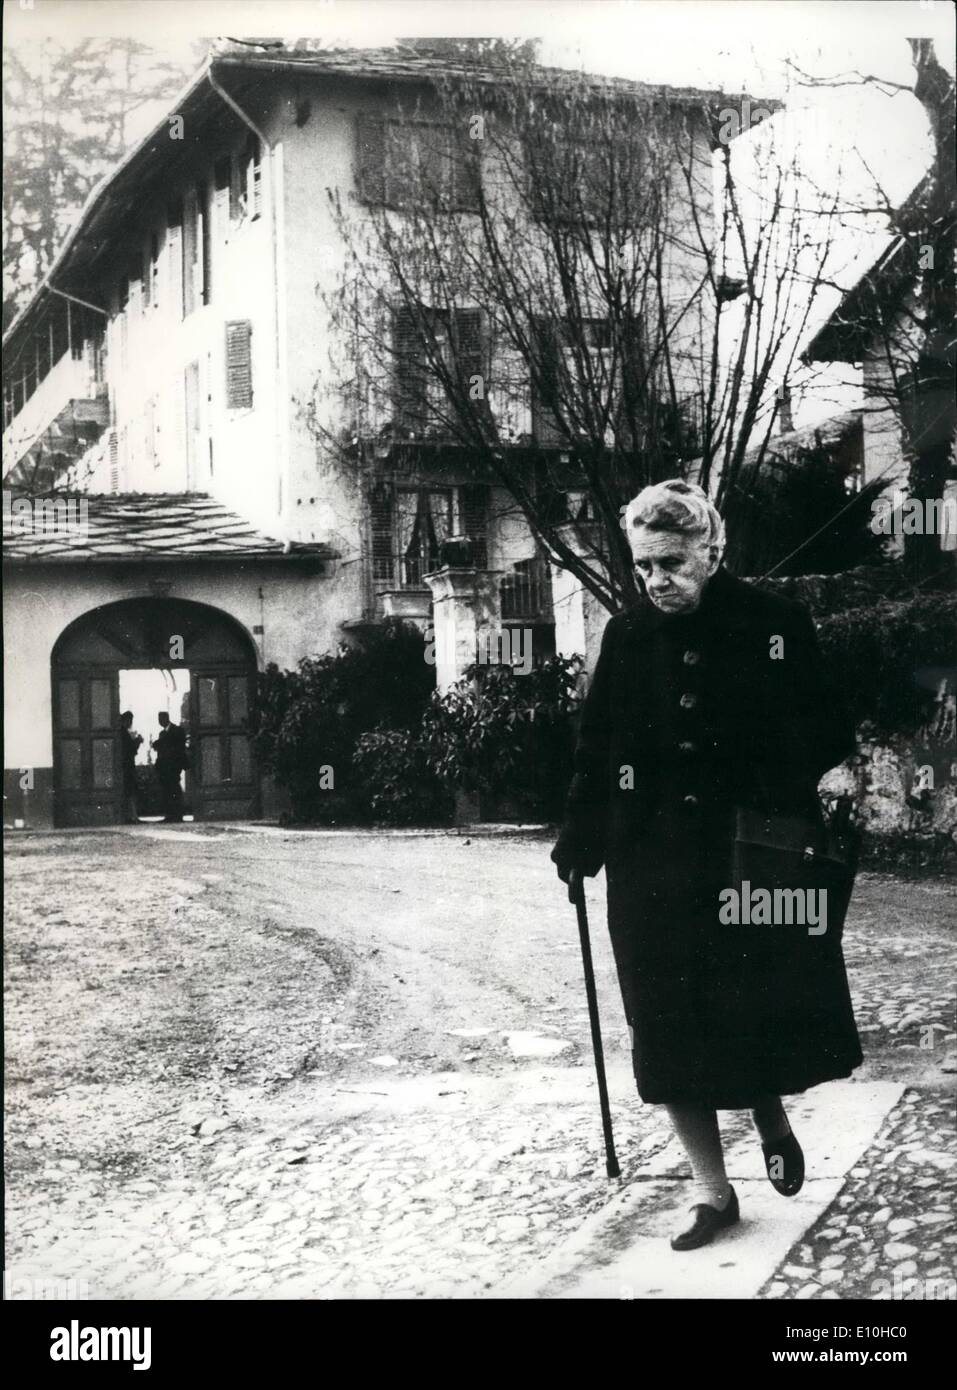 02 février 1973 - La communauté des réfugiés tsaristes, Luserna (près de Turin), en Italie. Photo montre Maria, 89 Yookowsea, laissant ''Villa Olanda' Banque D'Images